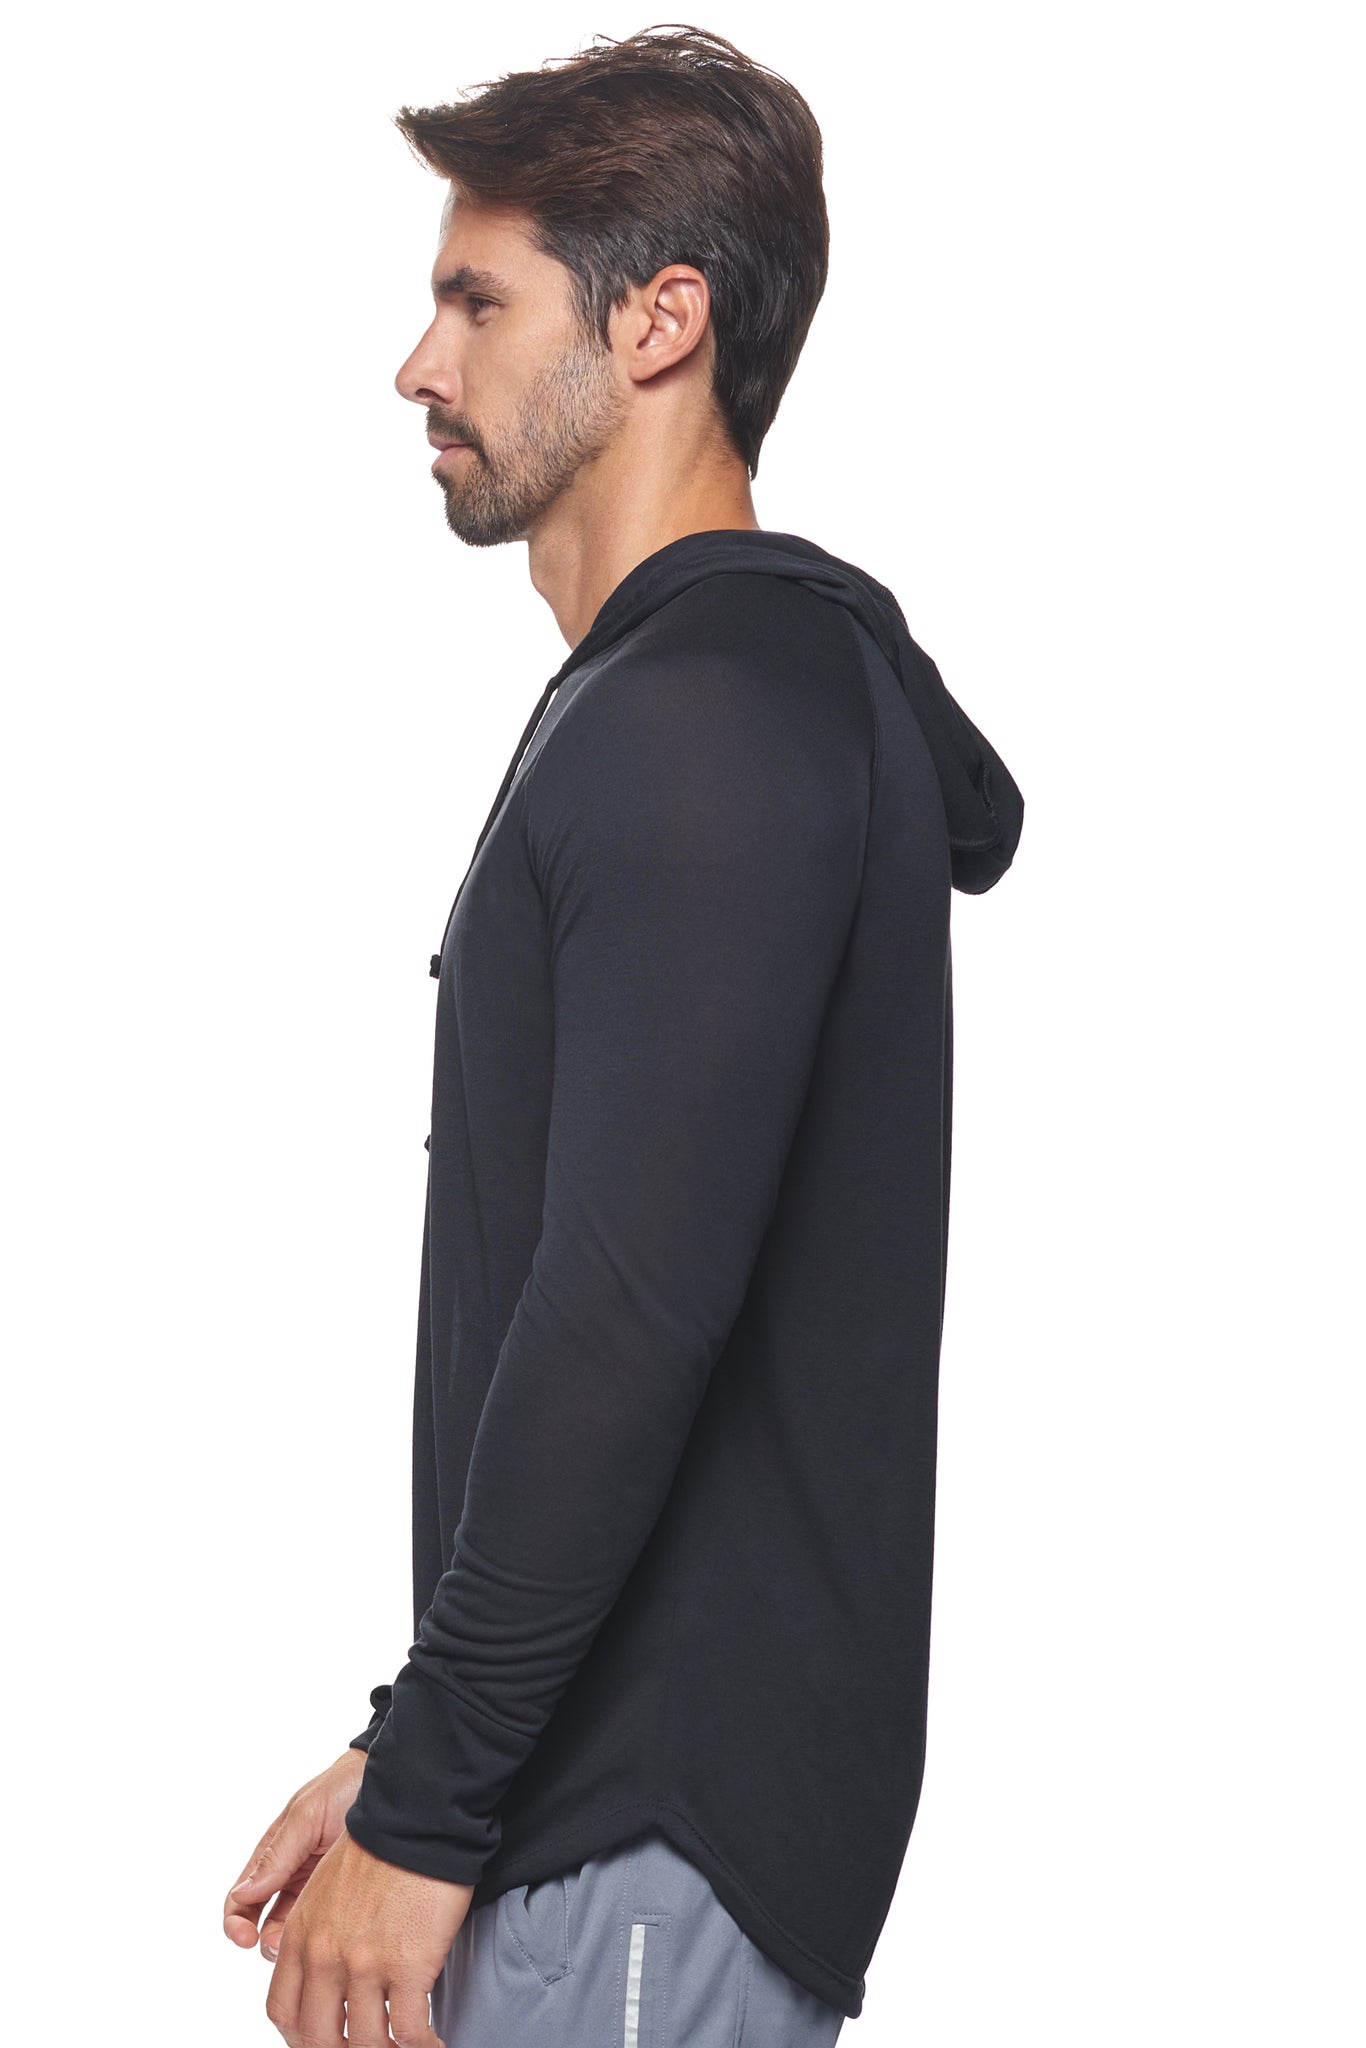 BE915🇺🇸 Siro™ Hoodie Shirt - Expert Brand#black